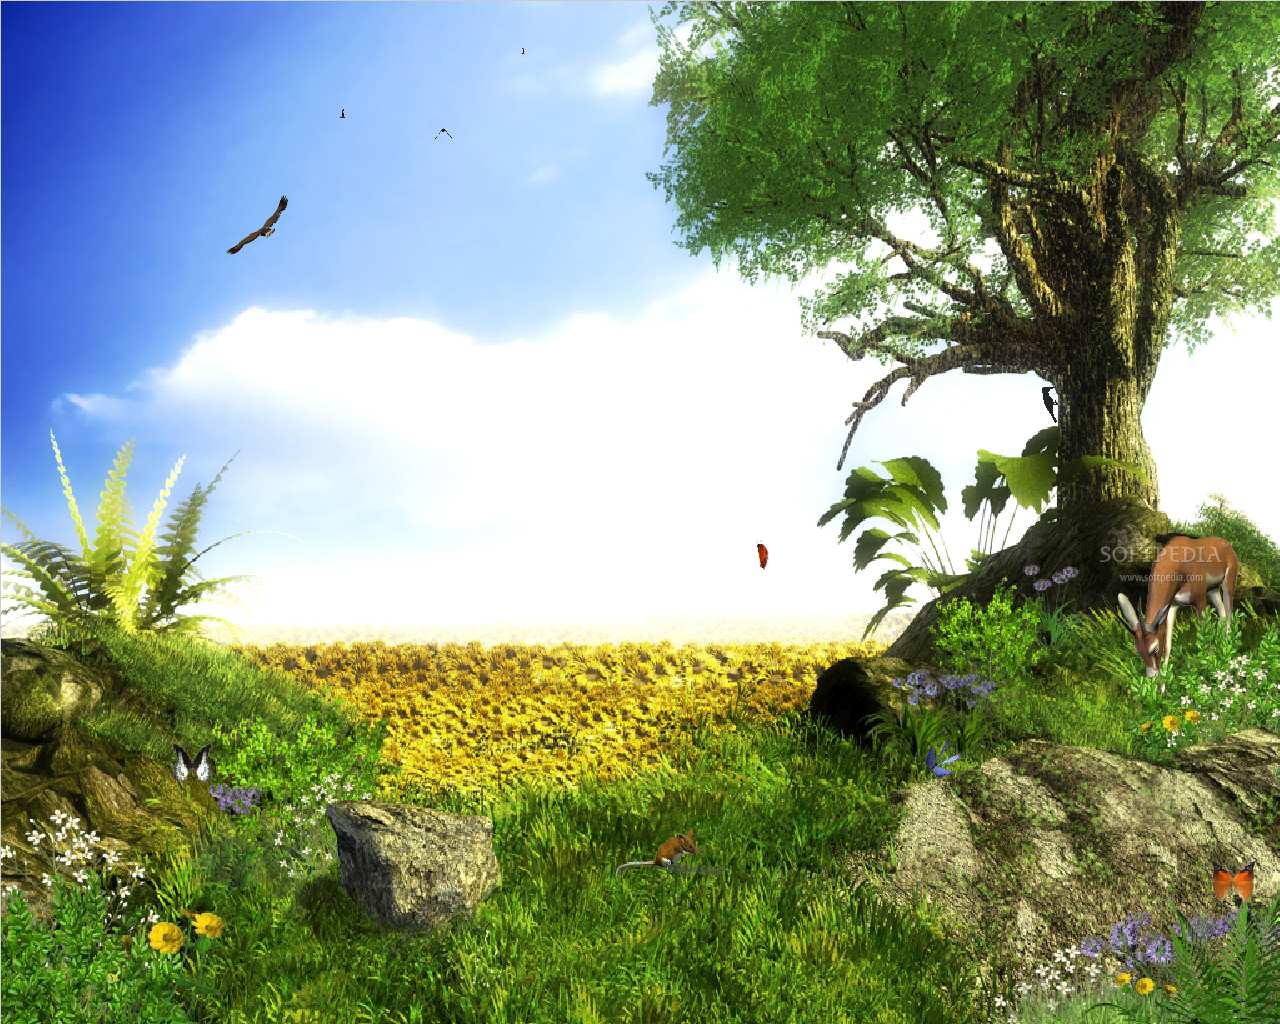 50+] Nature Animated Wallpaper Free Download - WallpaperSafari